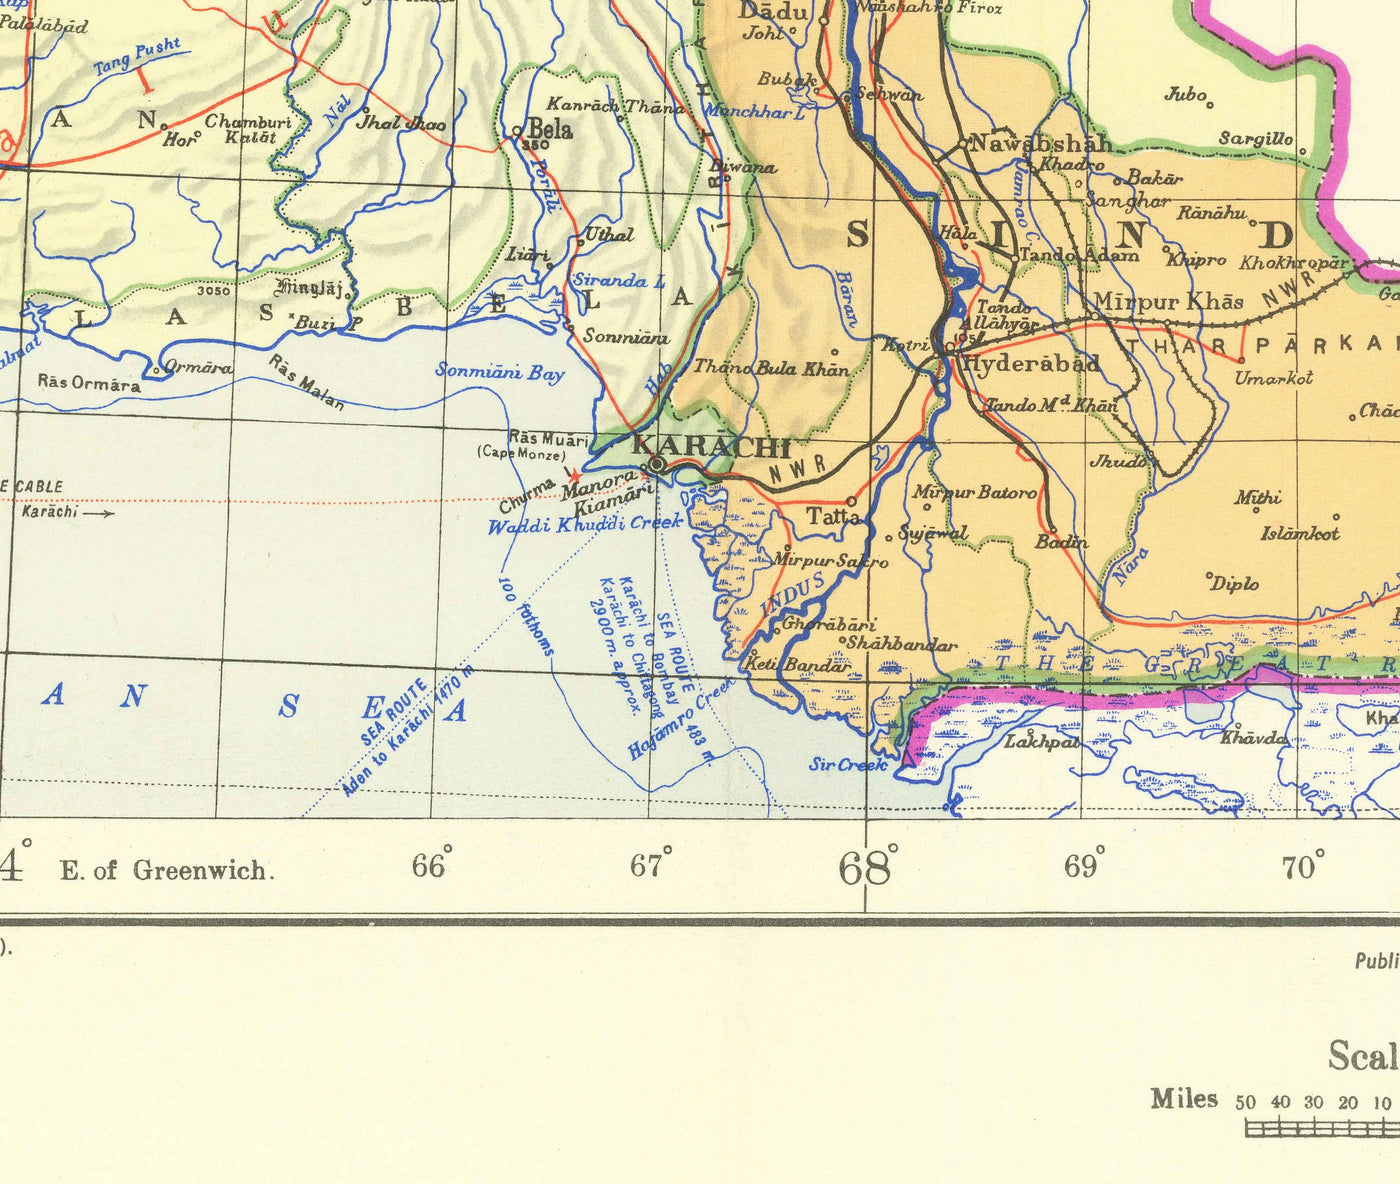 Primer mapa de Pakistán, 1953 - Antiguo mapa del Oeste y el Este independientes - Lahore, Bangladesh, Cachemira, Raj británico